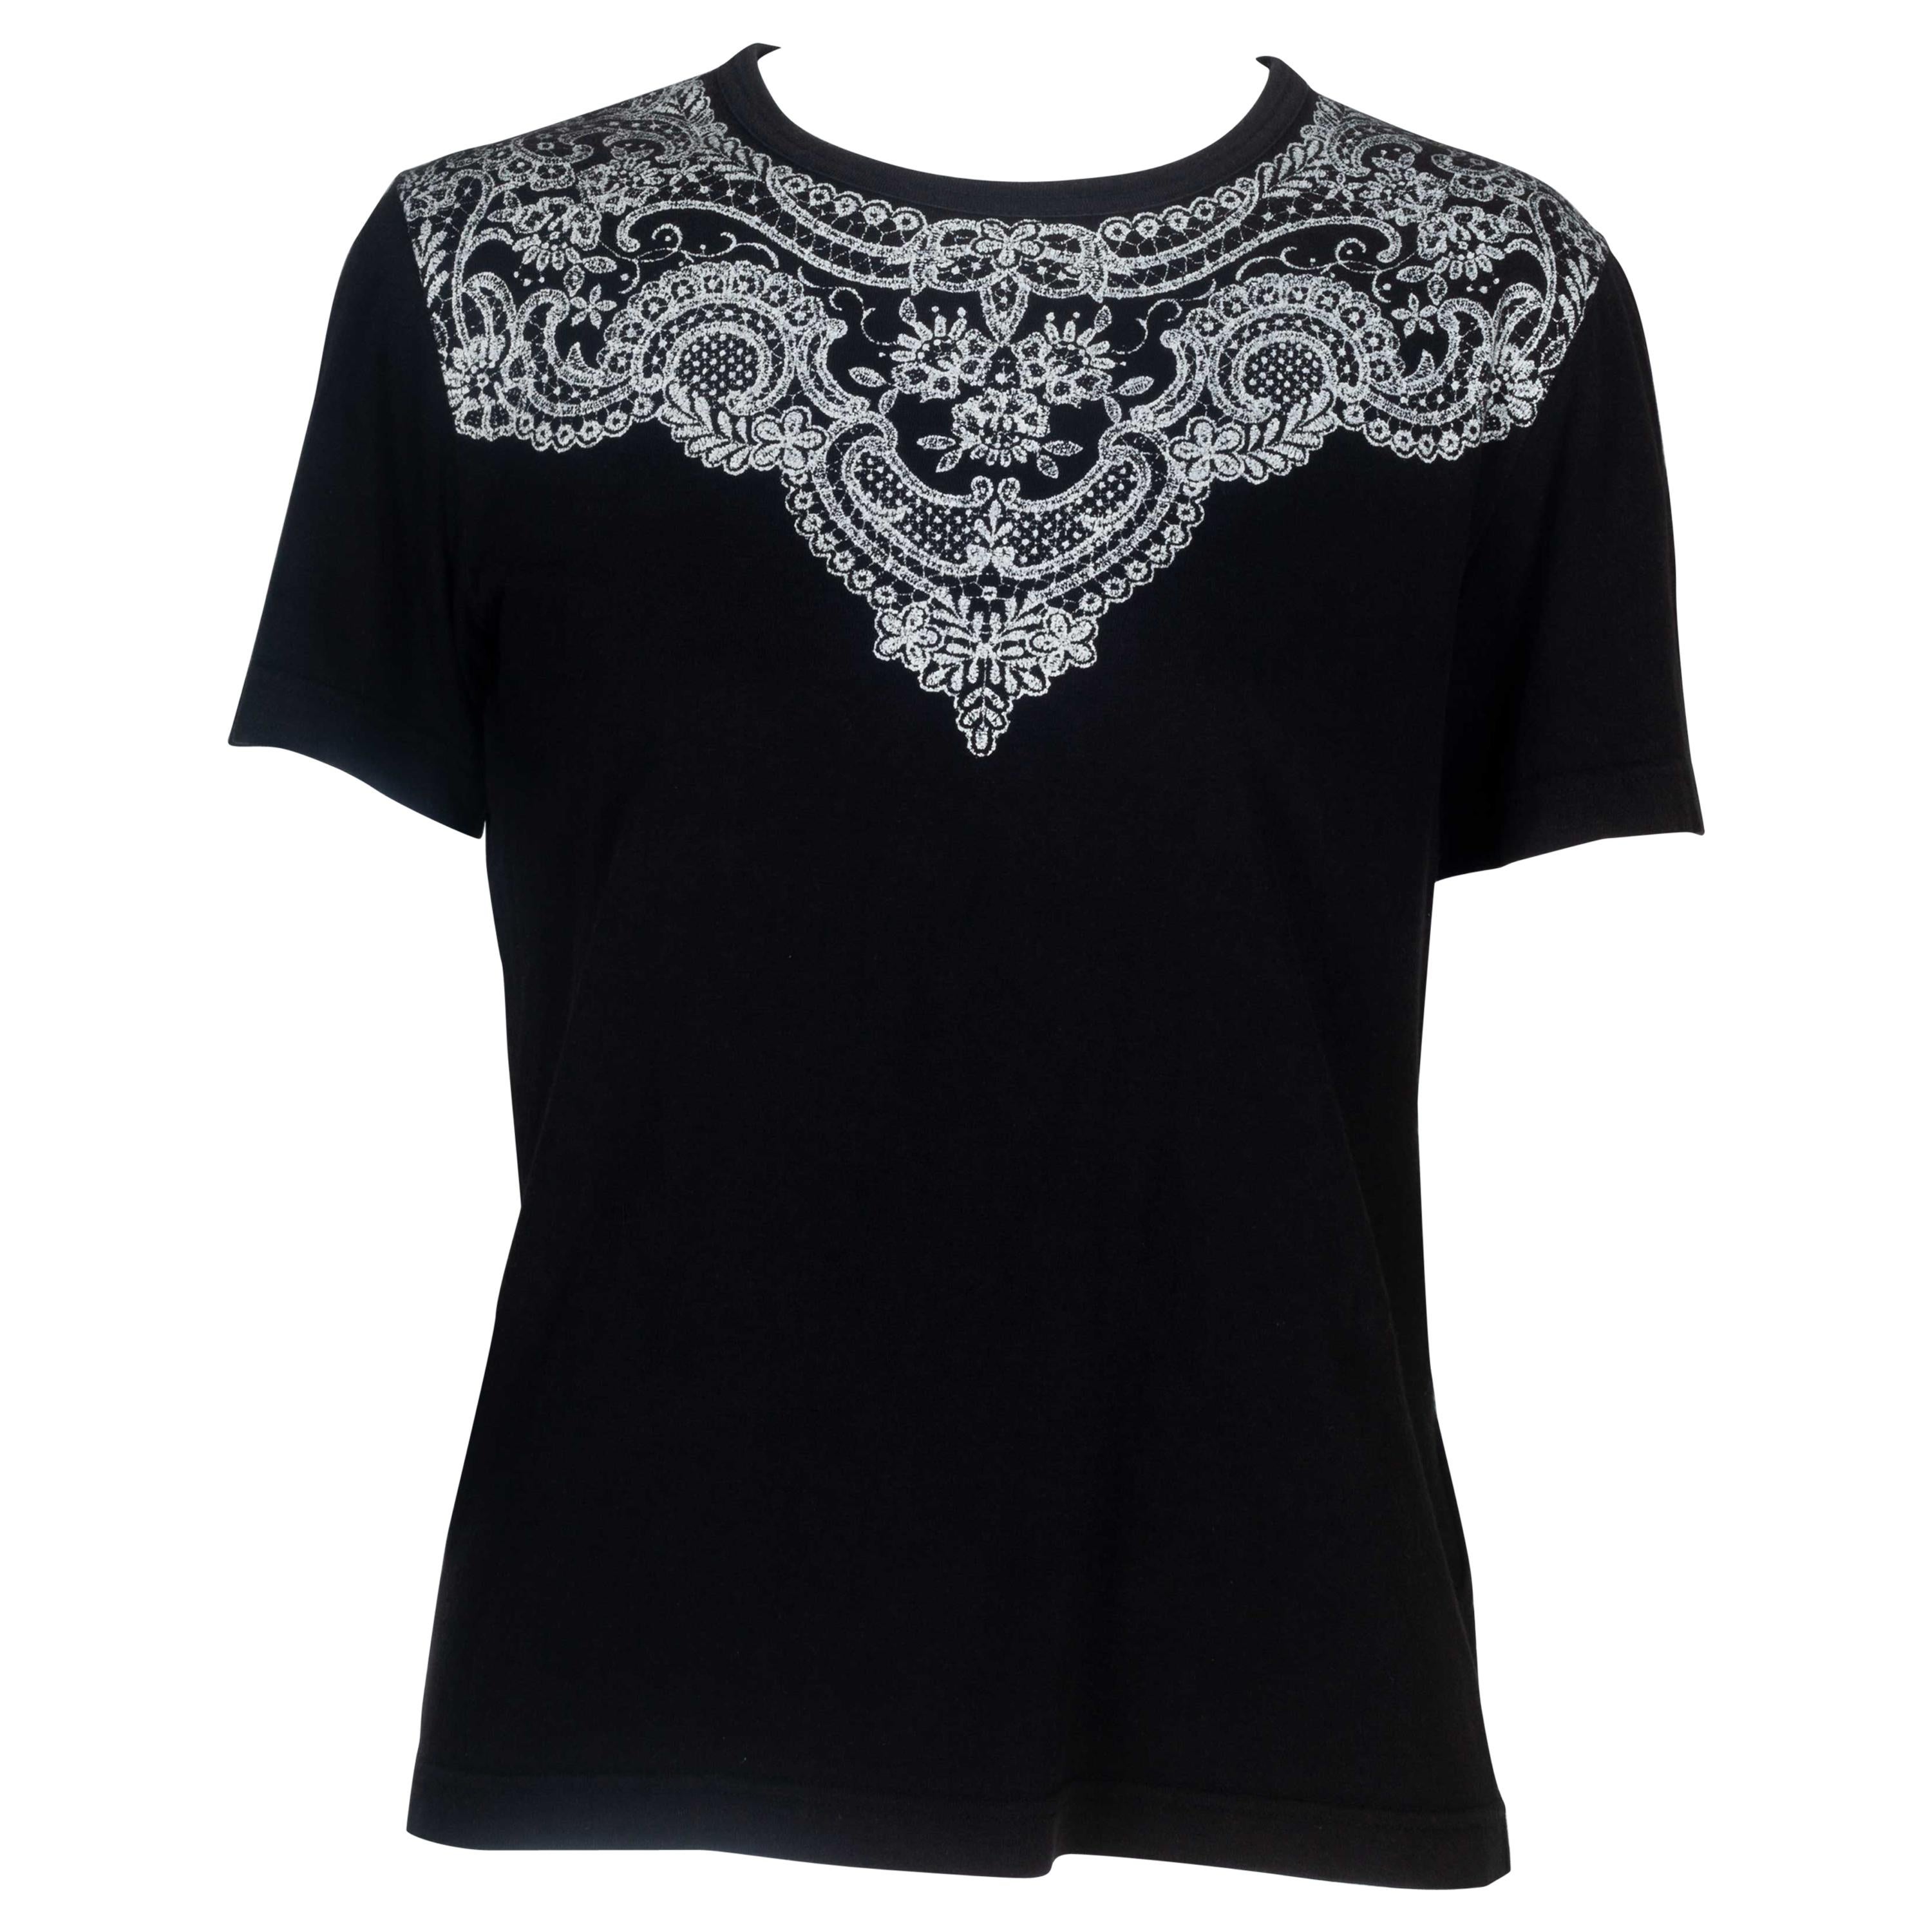 Comme des Garçons Black T-shirt with Lace Motif, 2006